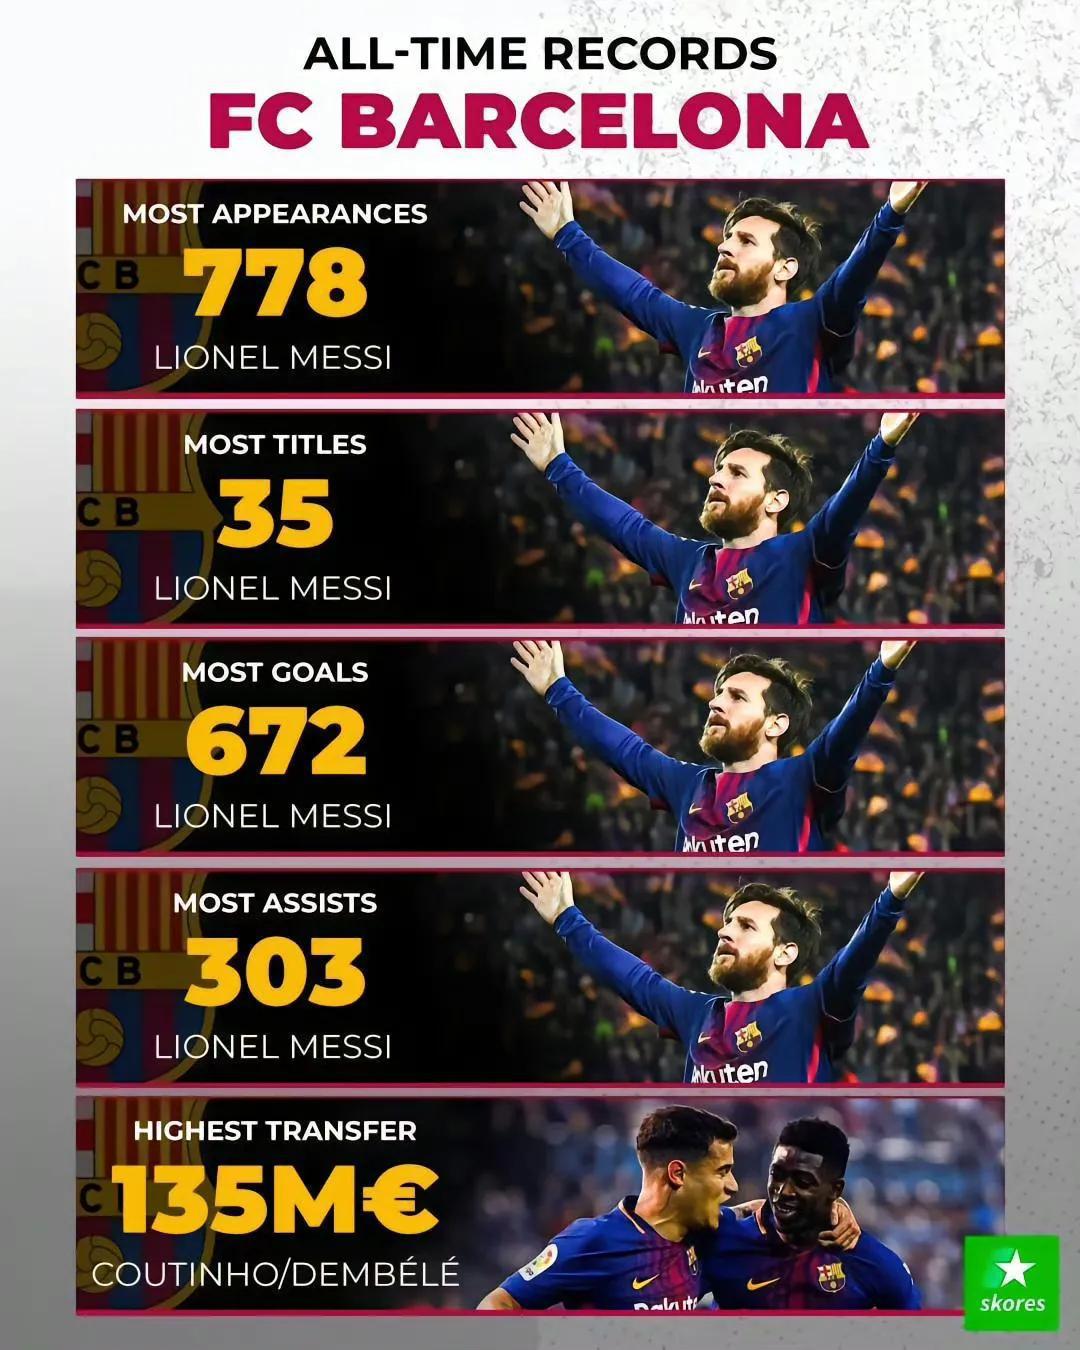 欧洲九大豪门队史最佳记录。

巴塞罗那记录全是梅西，出场数最多，进球数最多，助攻(1)